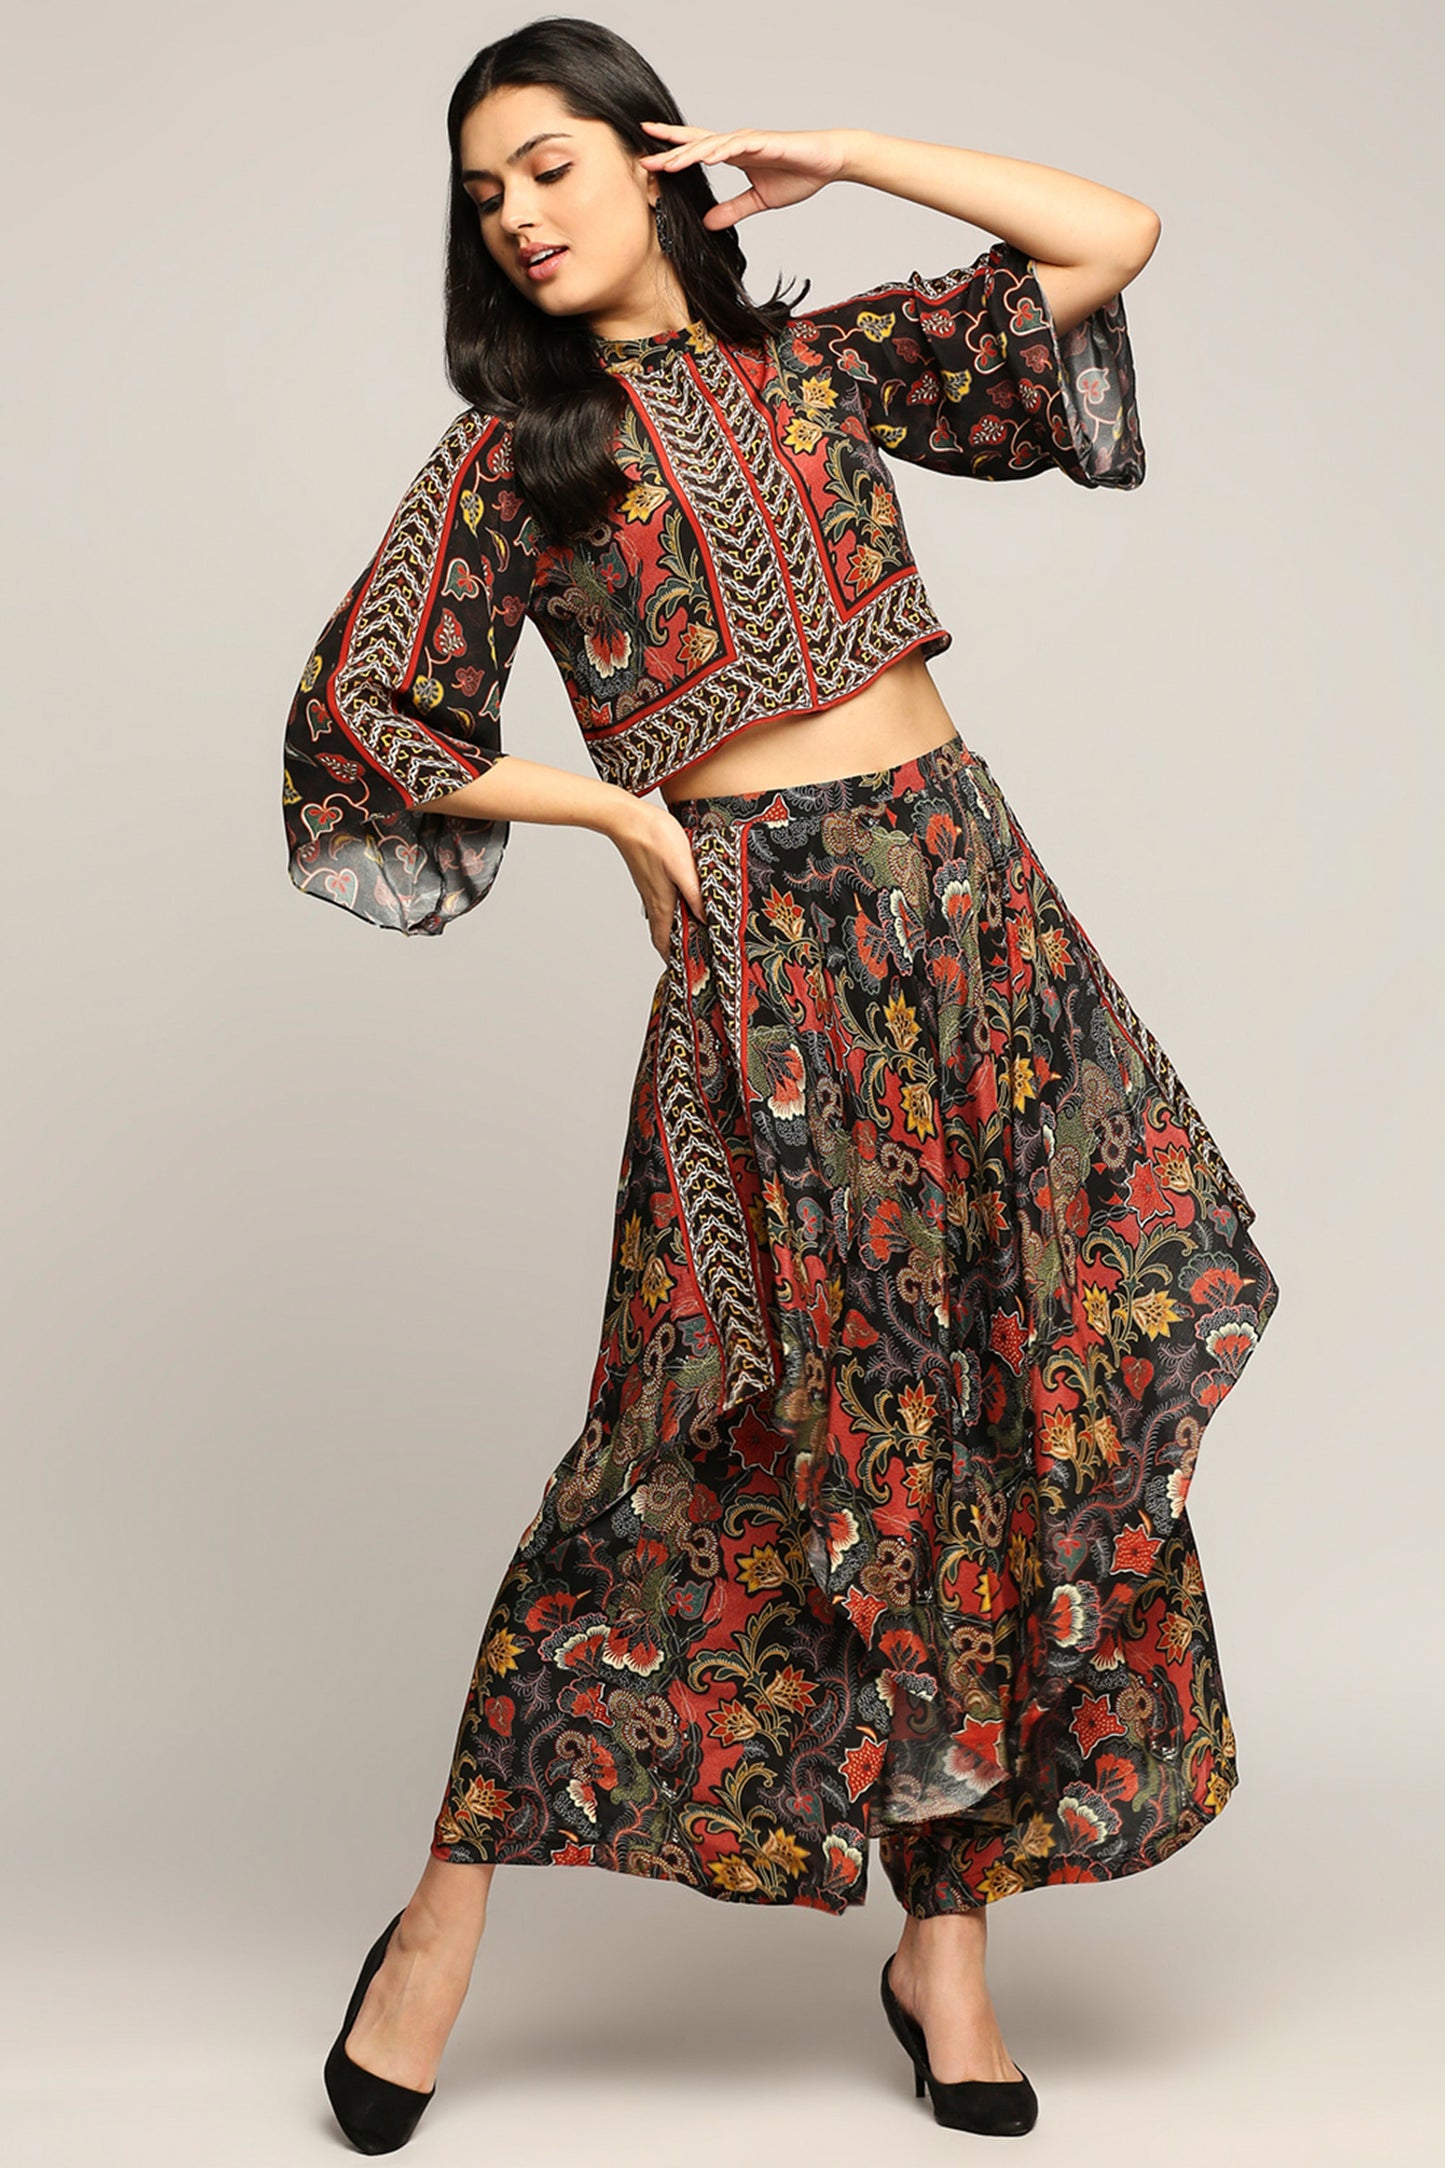 Batik printed top with layered pants